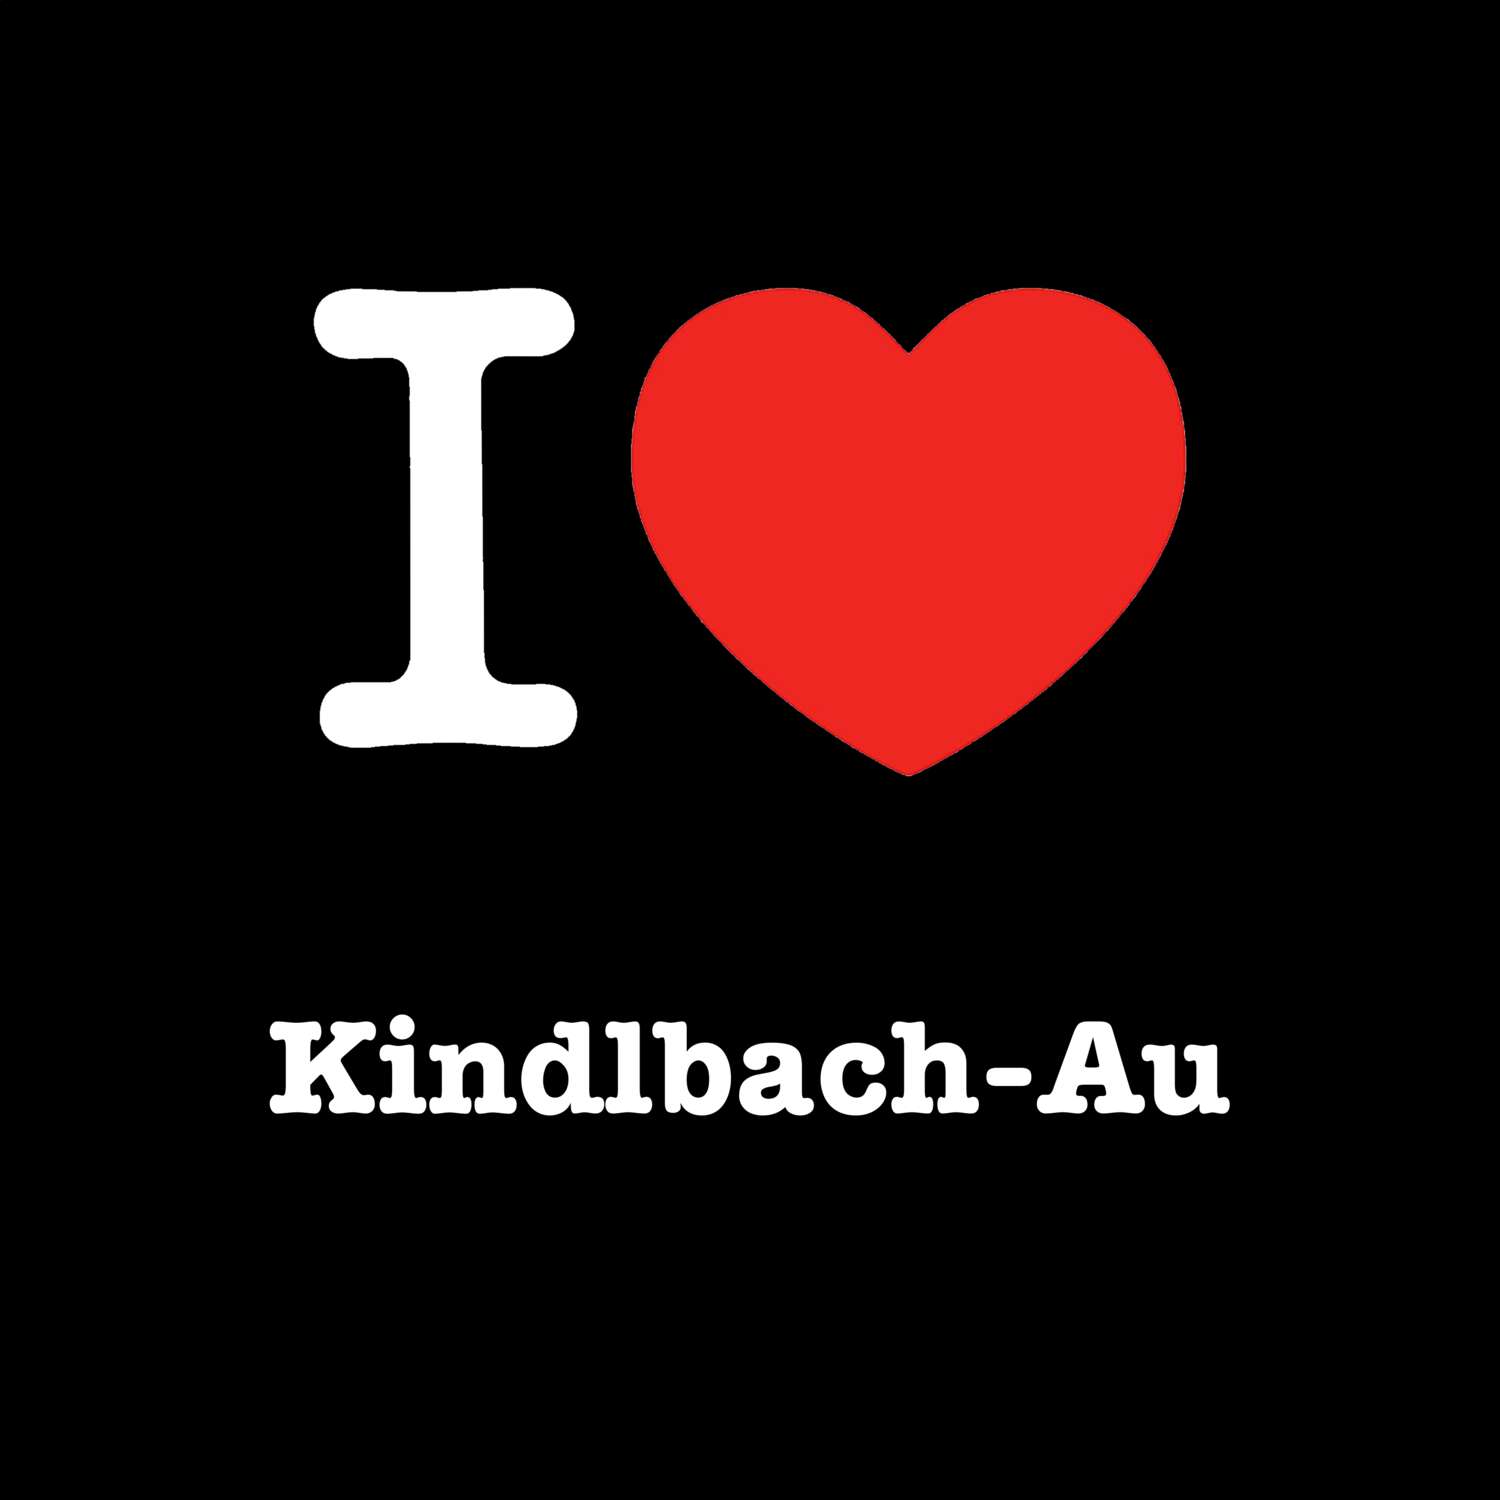 Kindlbach-Au T-Shirt »I love«